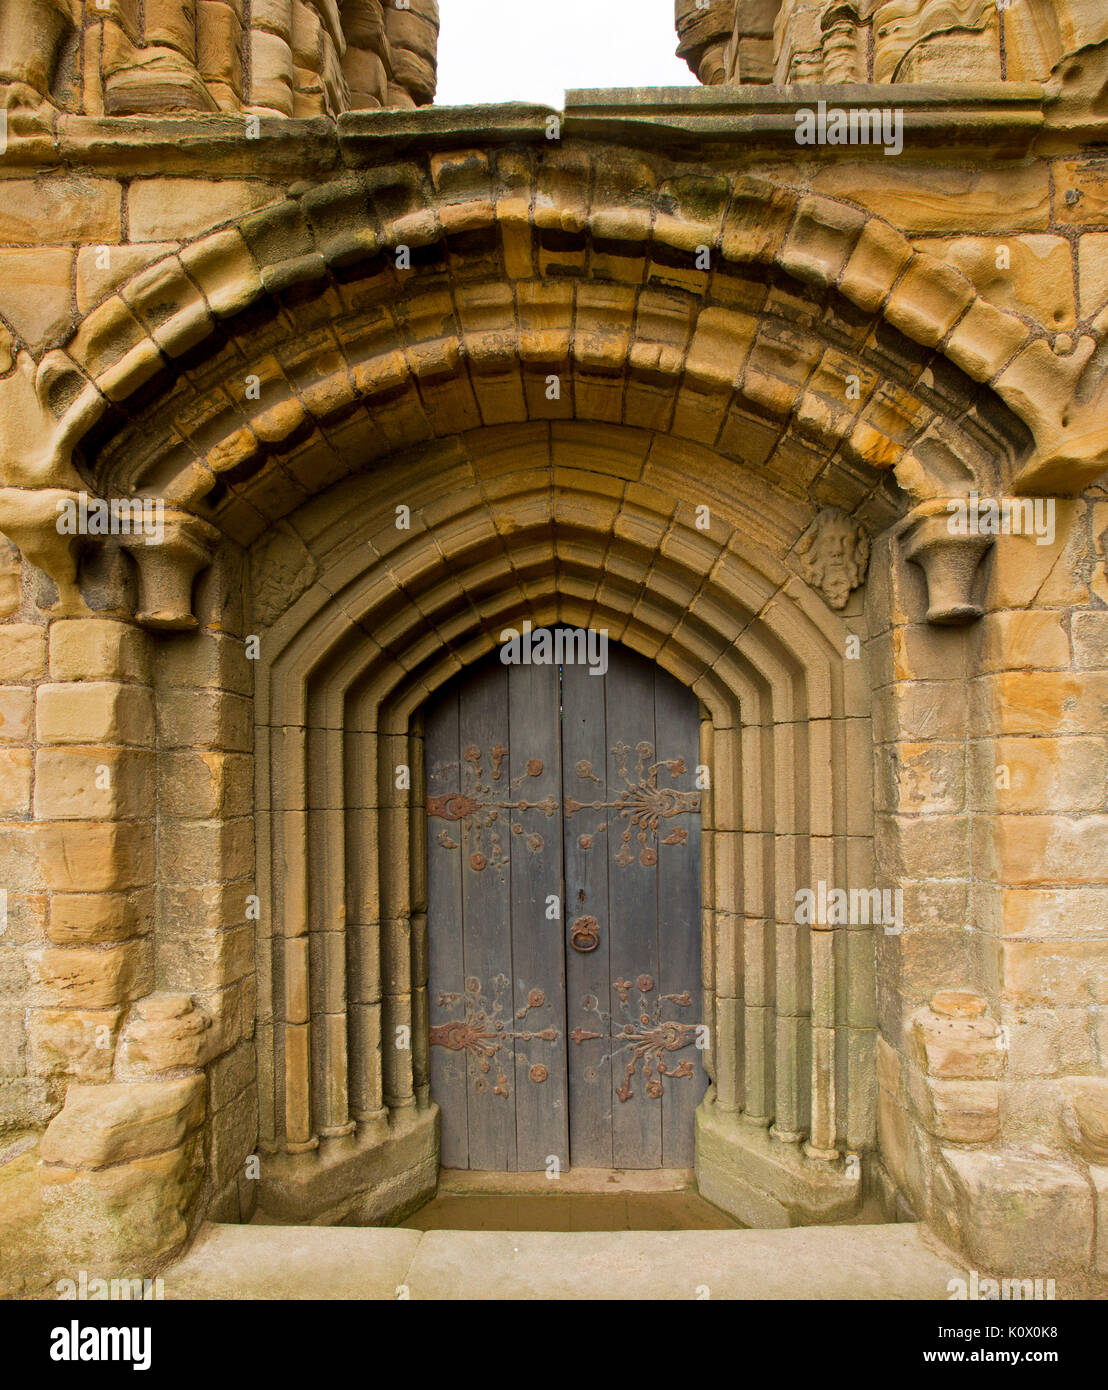 Porta ad arco ornato di cerniere è circondato da una serie di motivi decorativi archi di pietra a storico priorato di Tynemouth rovine, Inghilterra Foto Stock